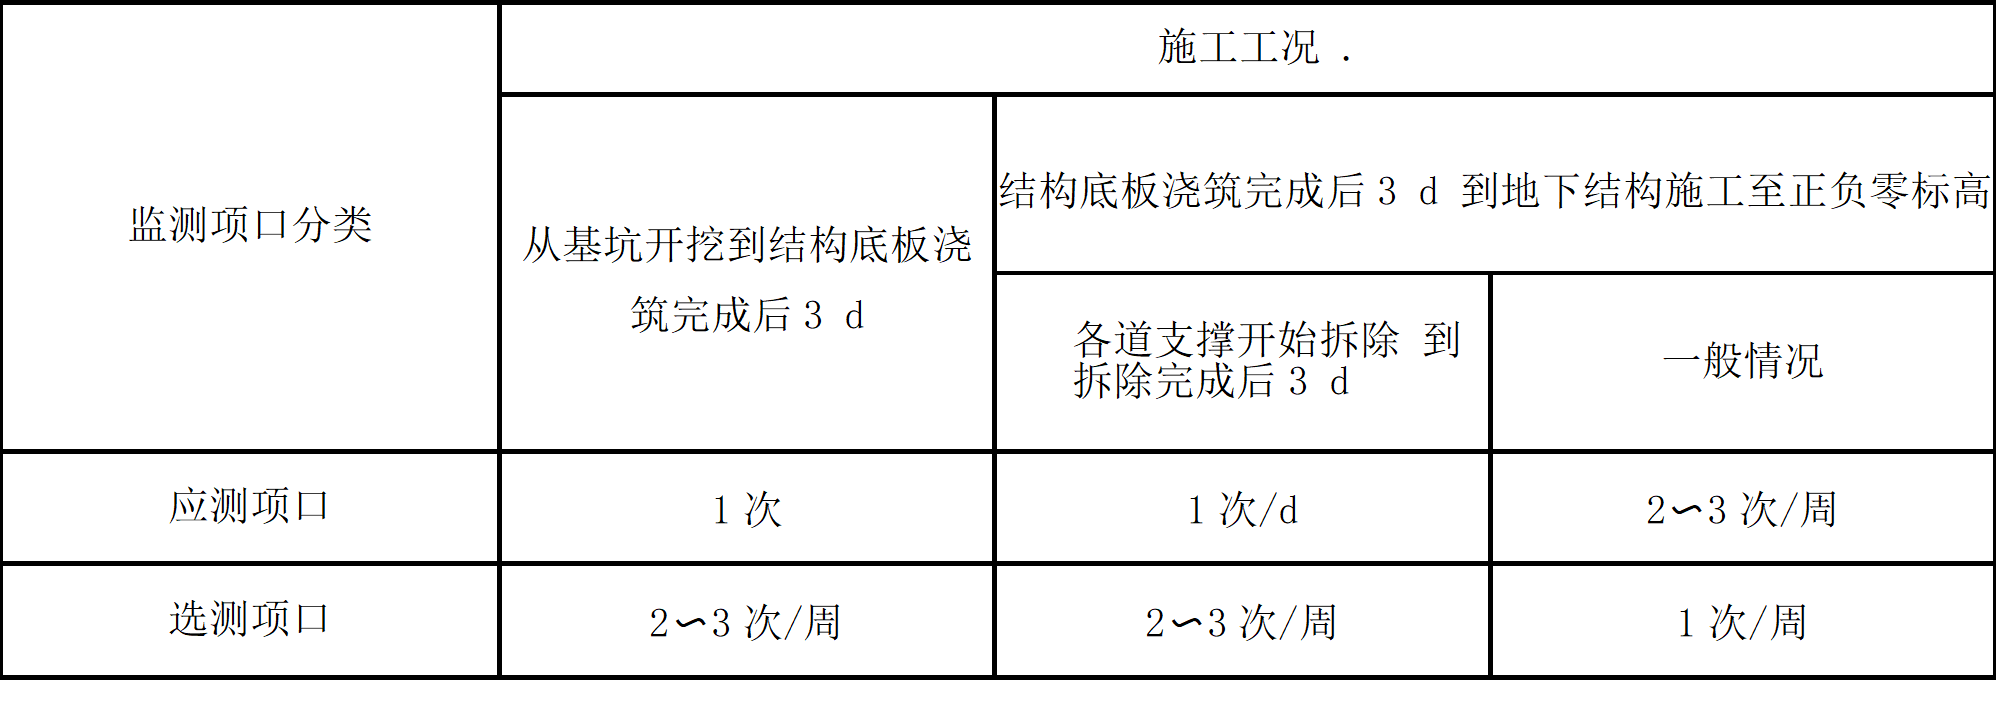 上海规范中关于监测频率的图表